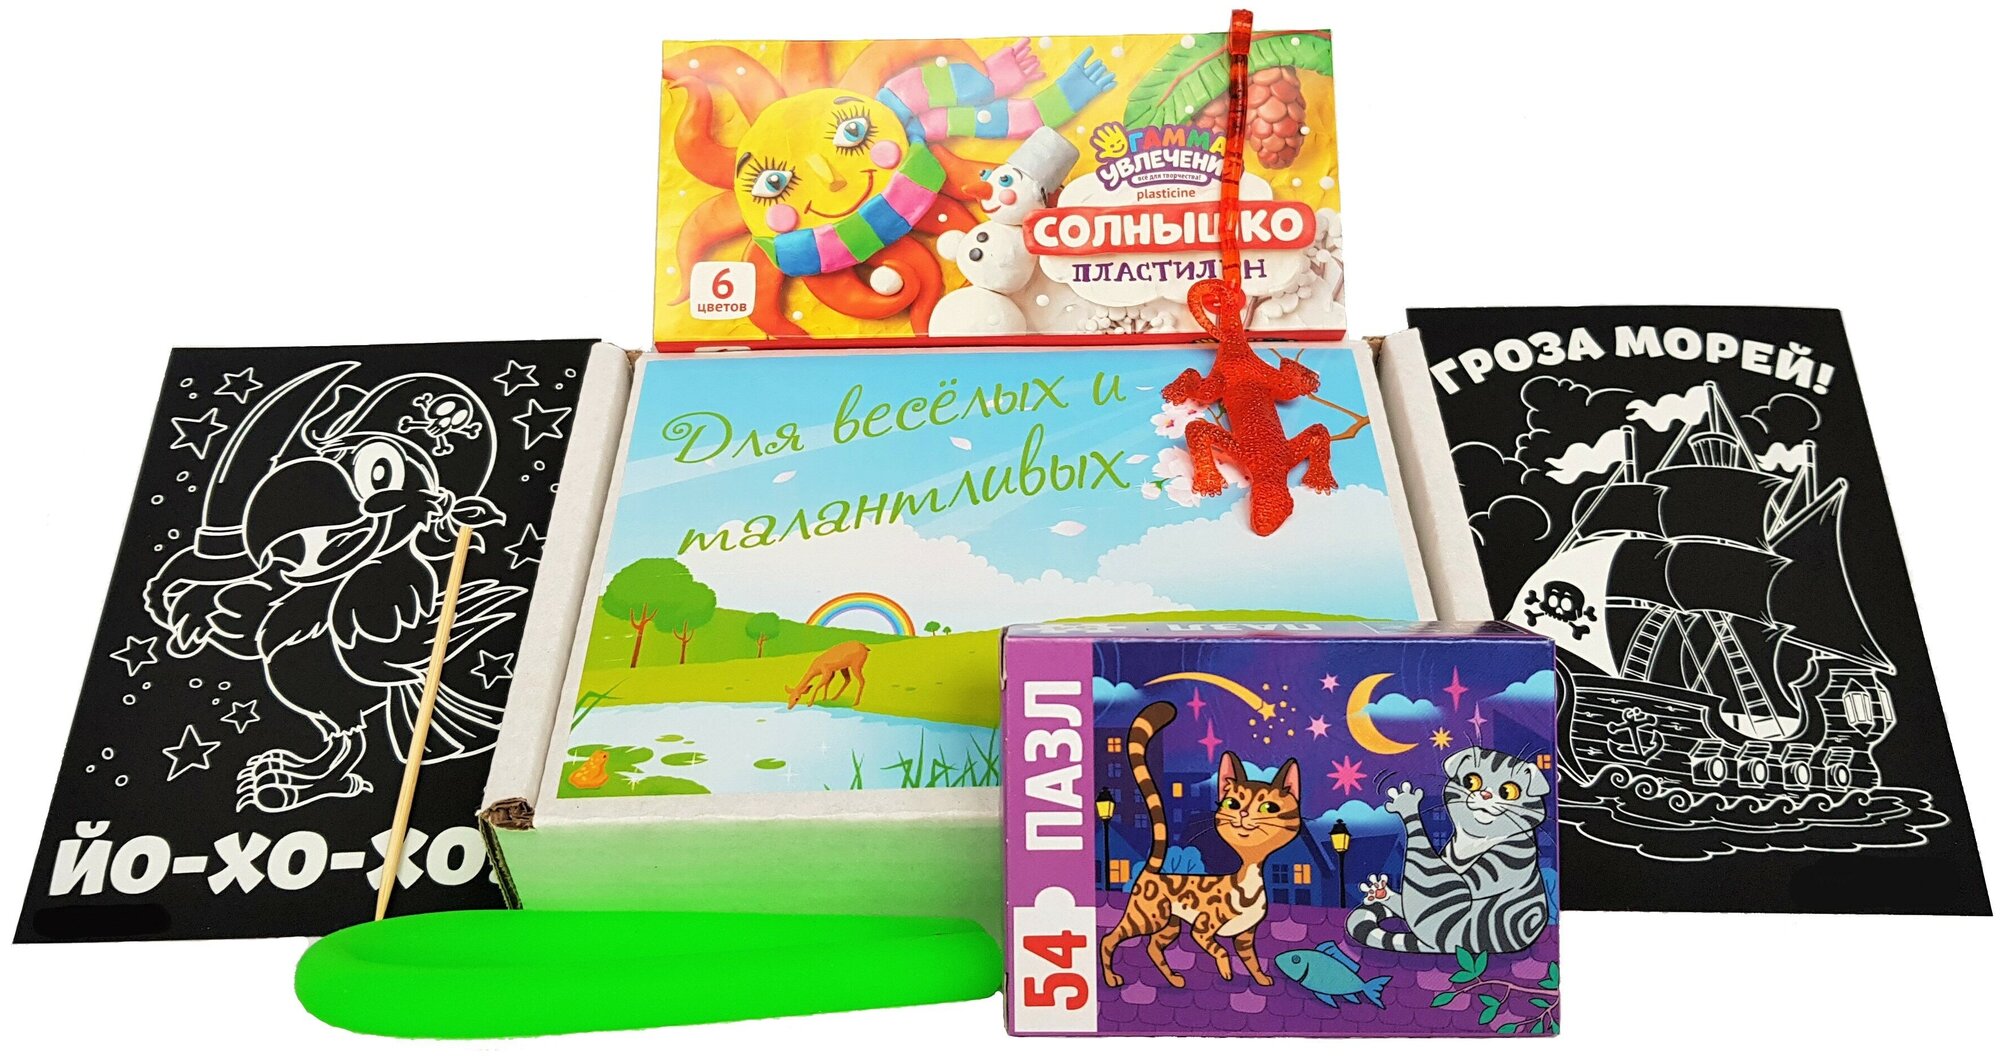 Развивающий игровой подарок для девочек и мальчиков 5-7 лет в веселой упаковке / развитие и творчество